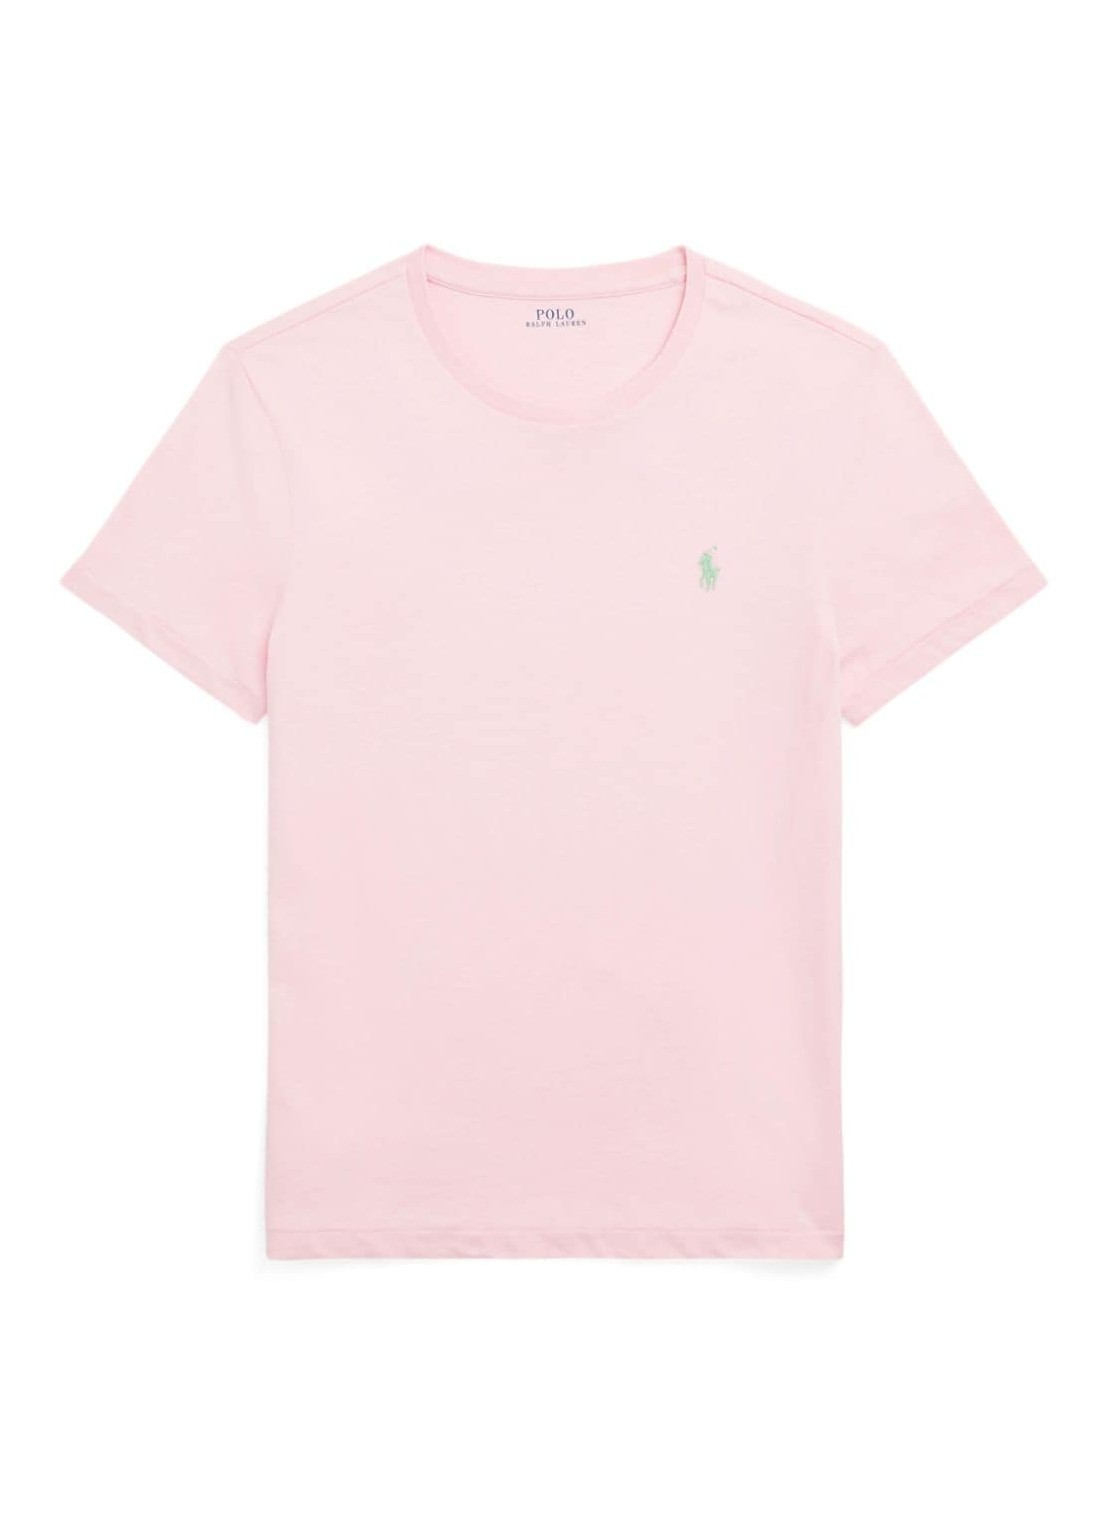 Camiseta polo ralph lauren t-shirt man sscncmslm2-short sleeve-t-shirt 710671438357 garden pink c514